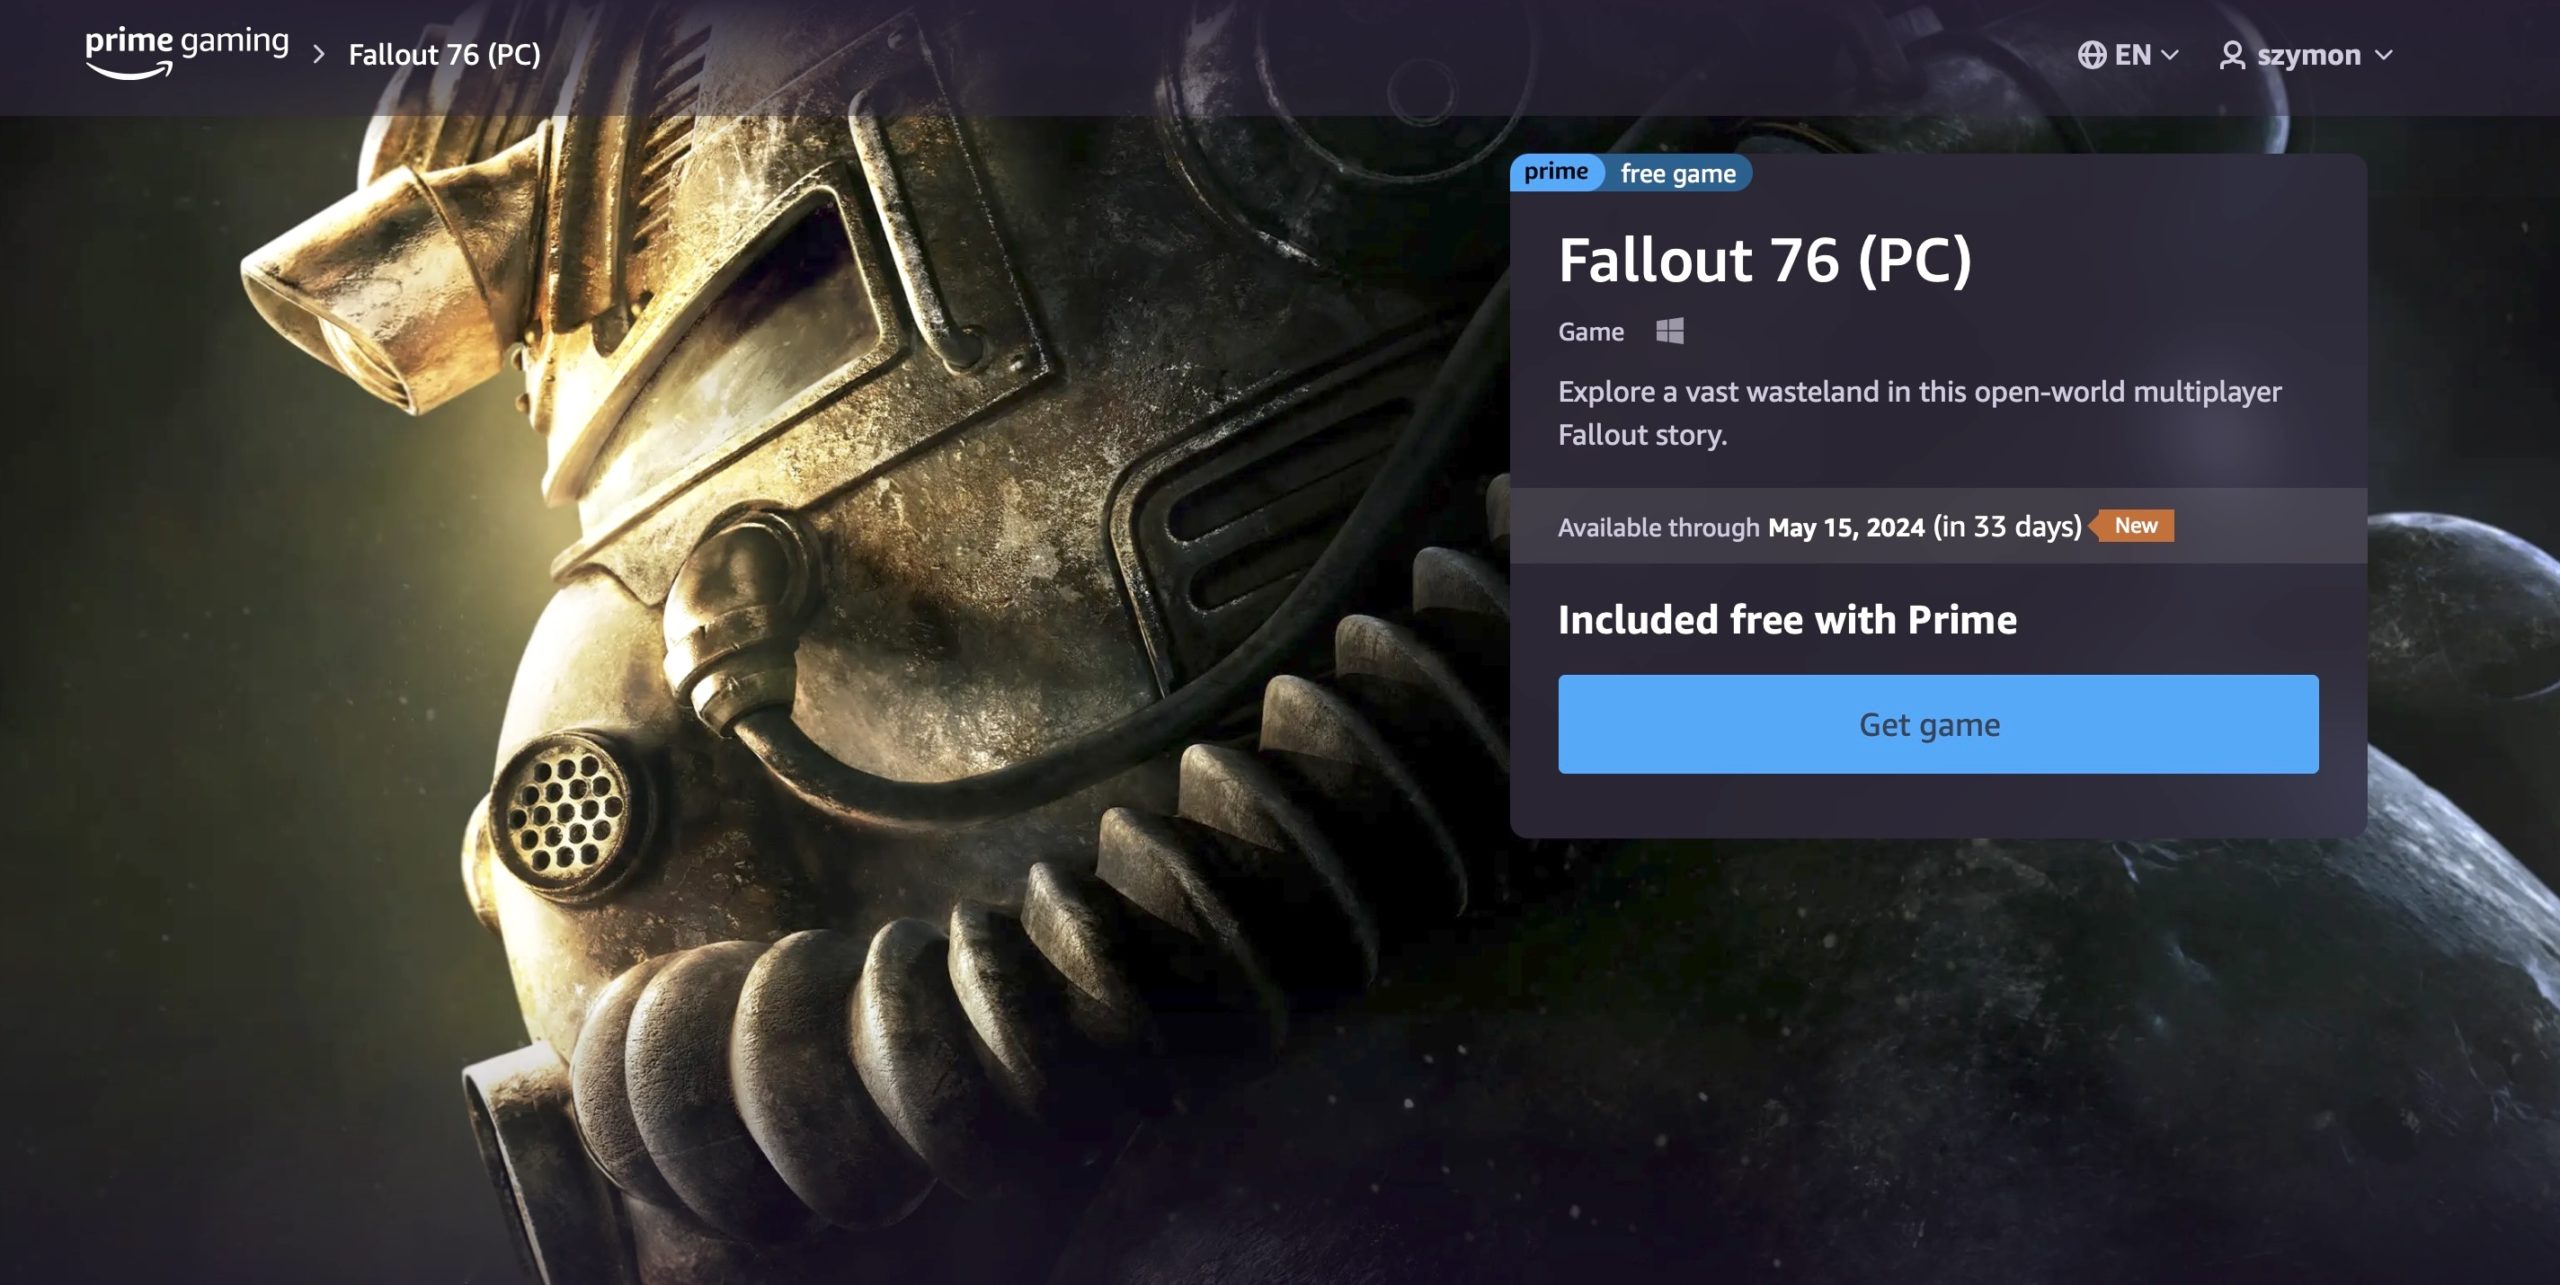 amazon, microsoft, kupiłeś amazon prime dla serialu fallout? masz grę fallout 76 za darmo